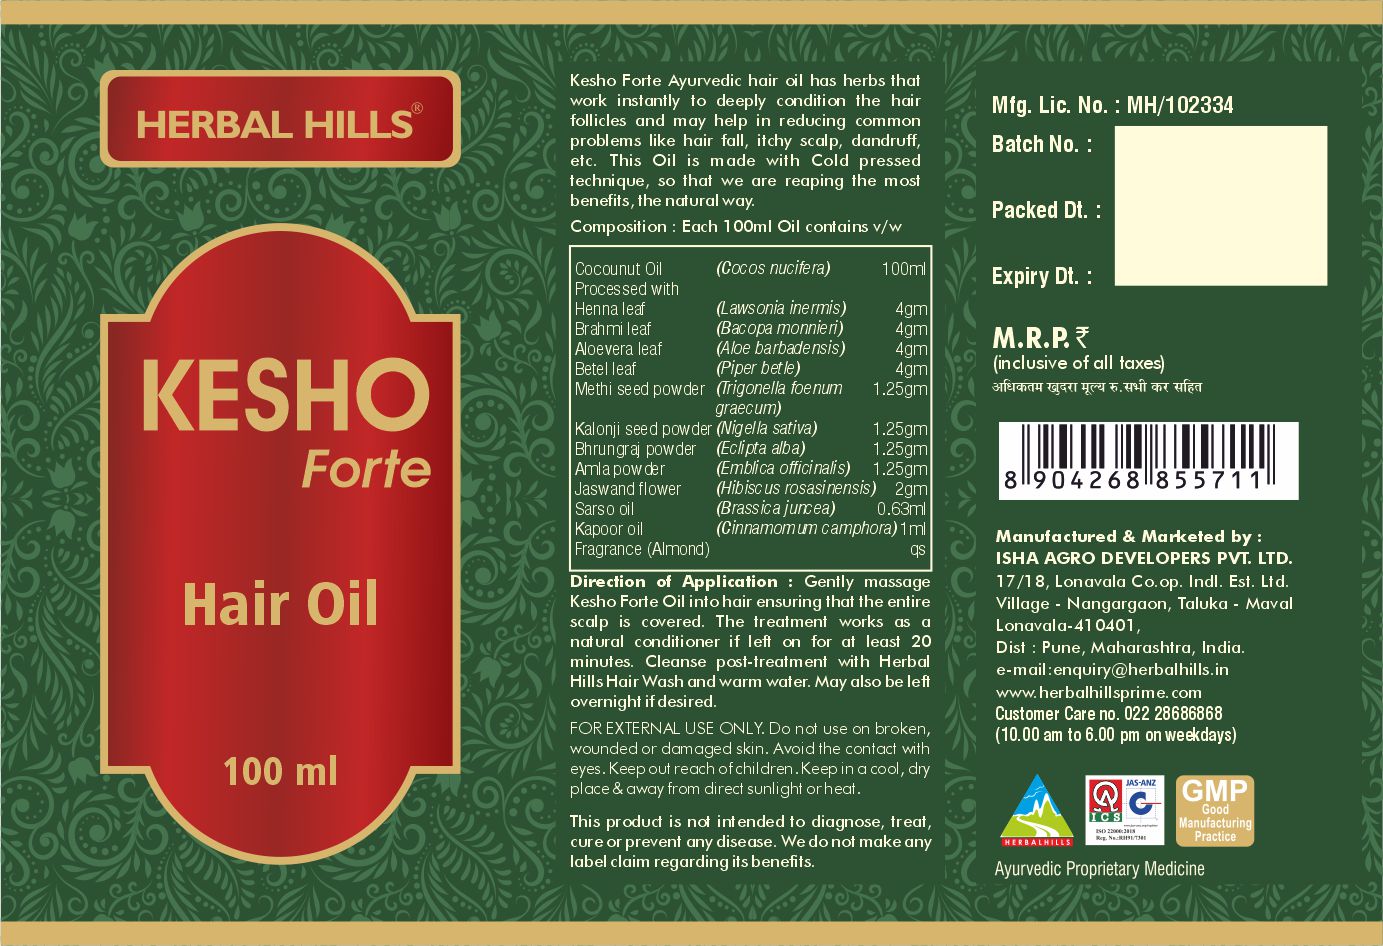 Buy Herbal Hills Kesho Forte Hair Oil at Best Price Online